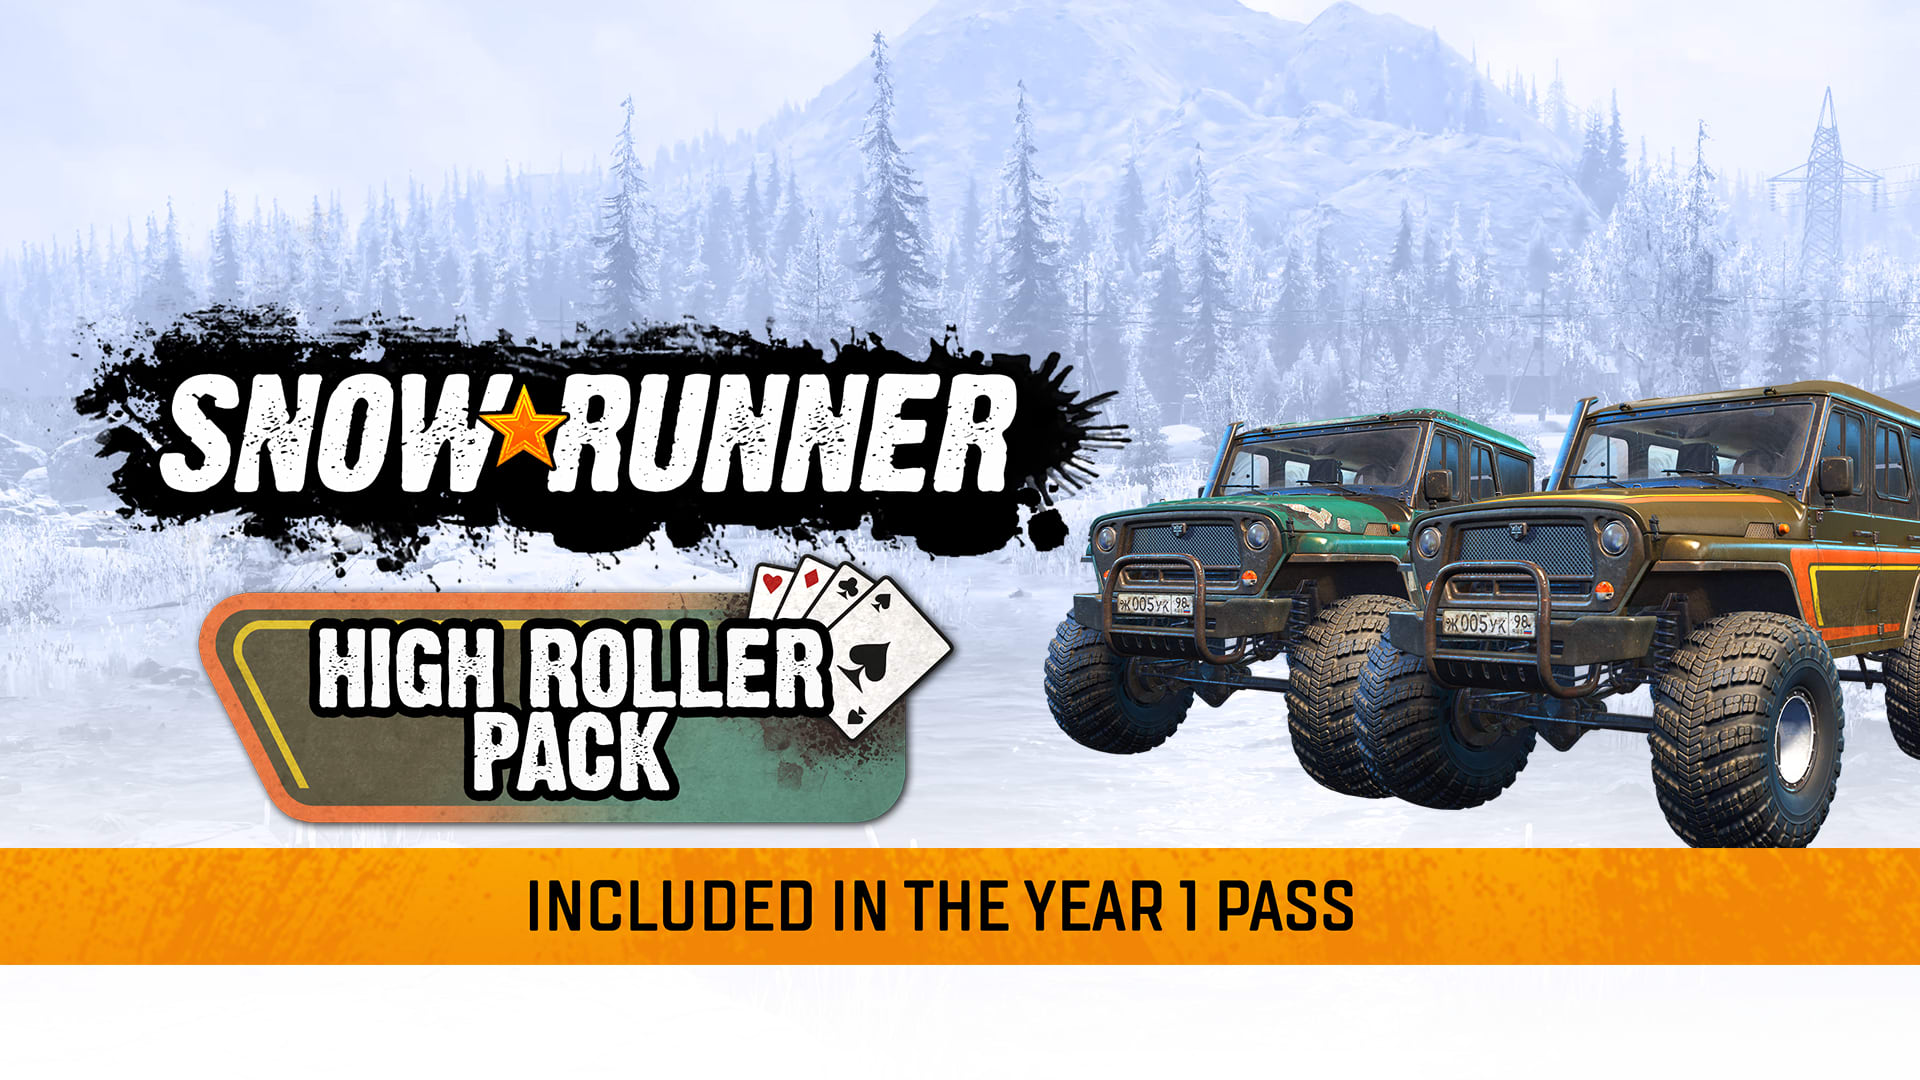 SnowRunner - High Roller Pack